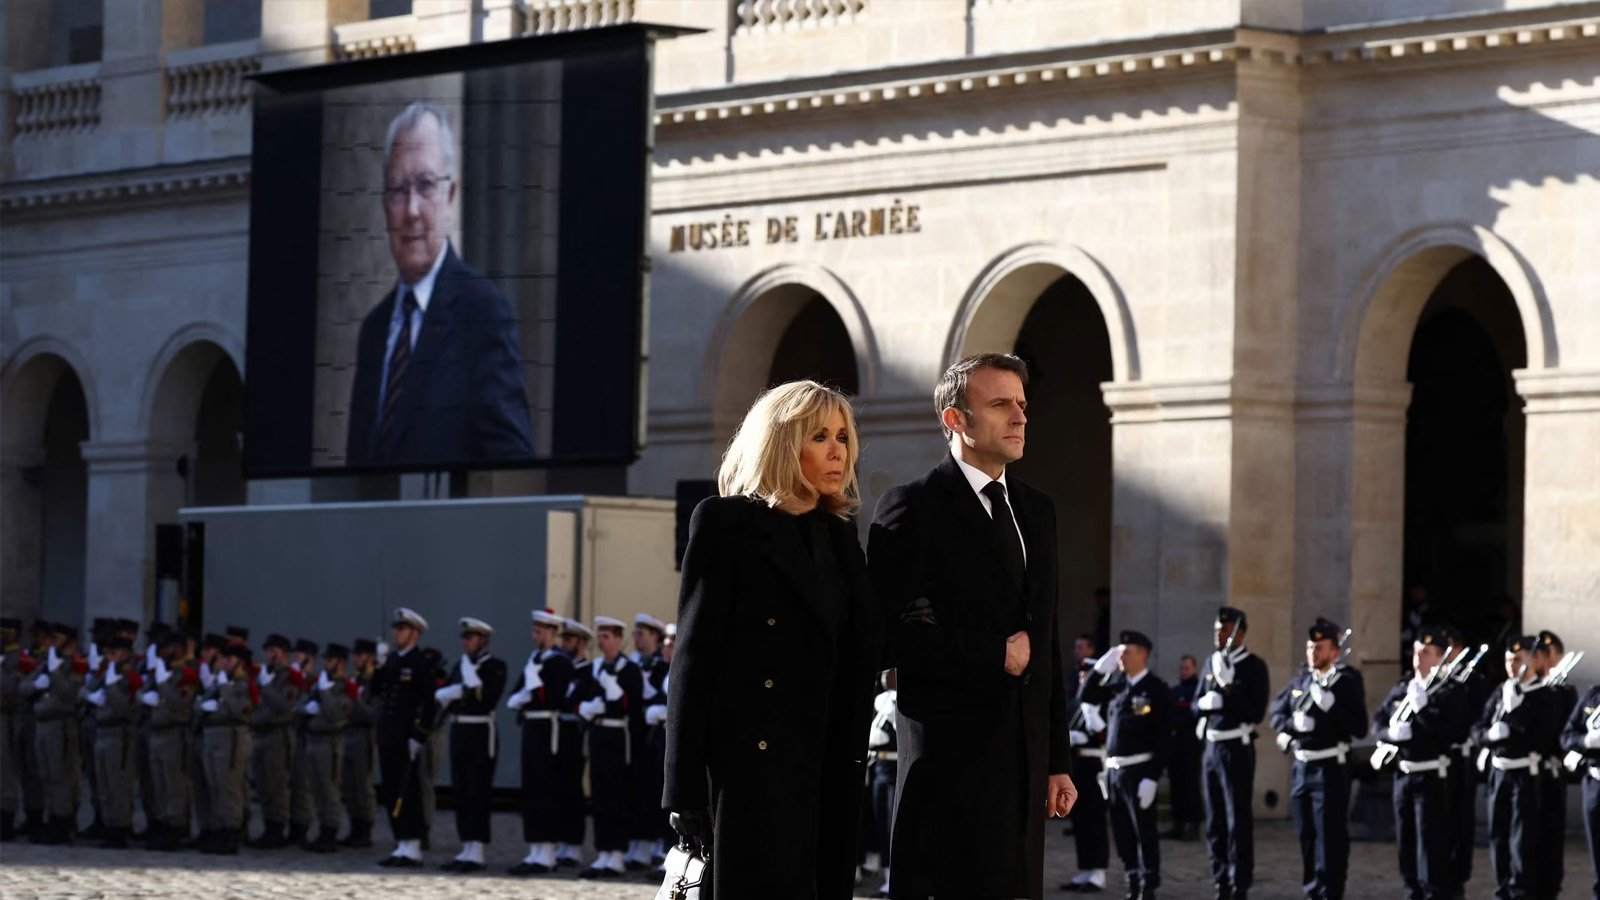 إيمانويل ماكرون وزوجته بريجيت ماكرون خلال التكريم الوطني لجاك ديلور يوم الجمعة في باريس